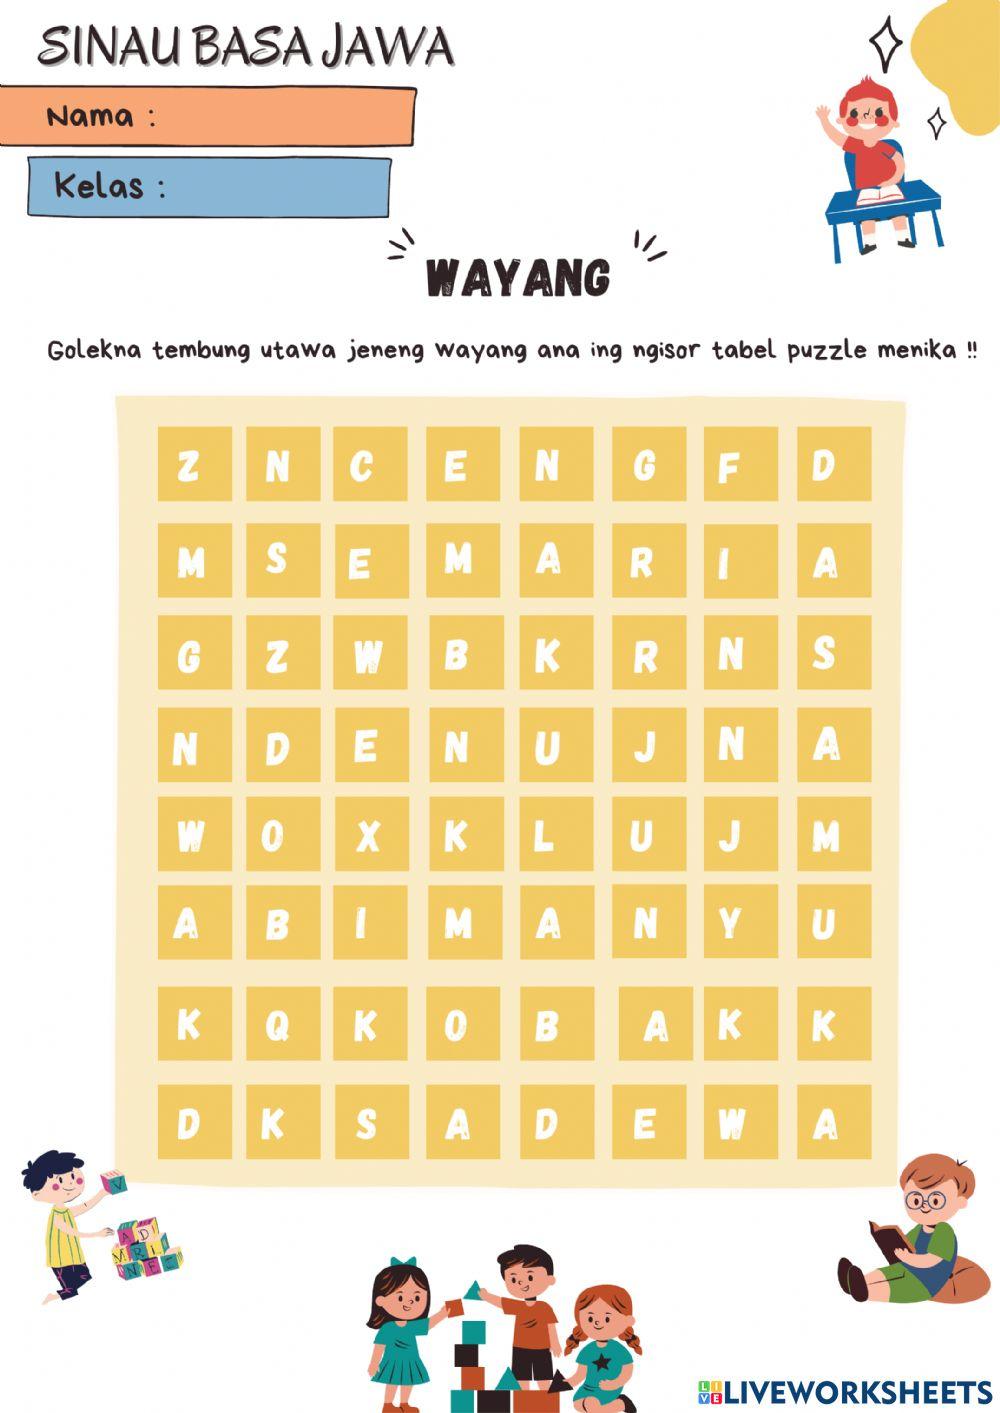 Soal Bahasa Jawa (Word Search Puzzle) -Wayang-